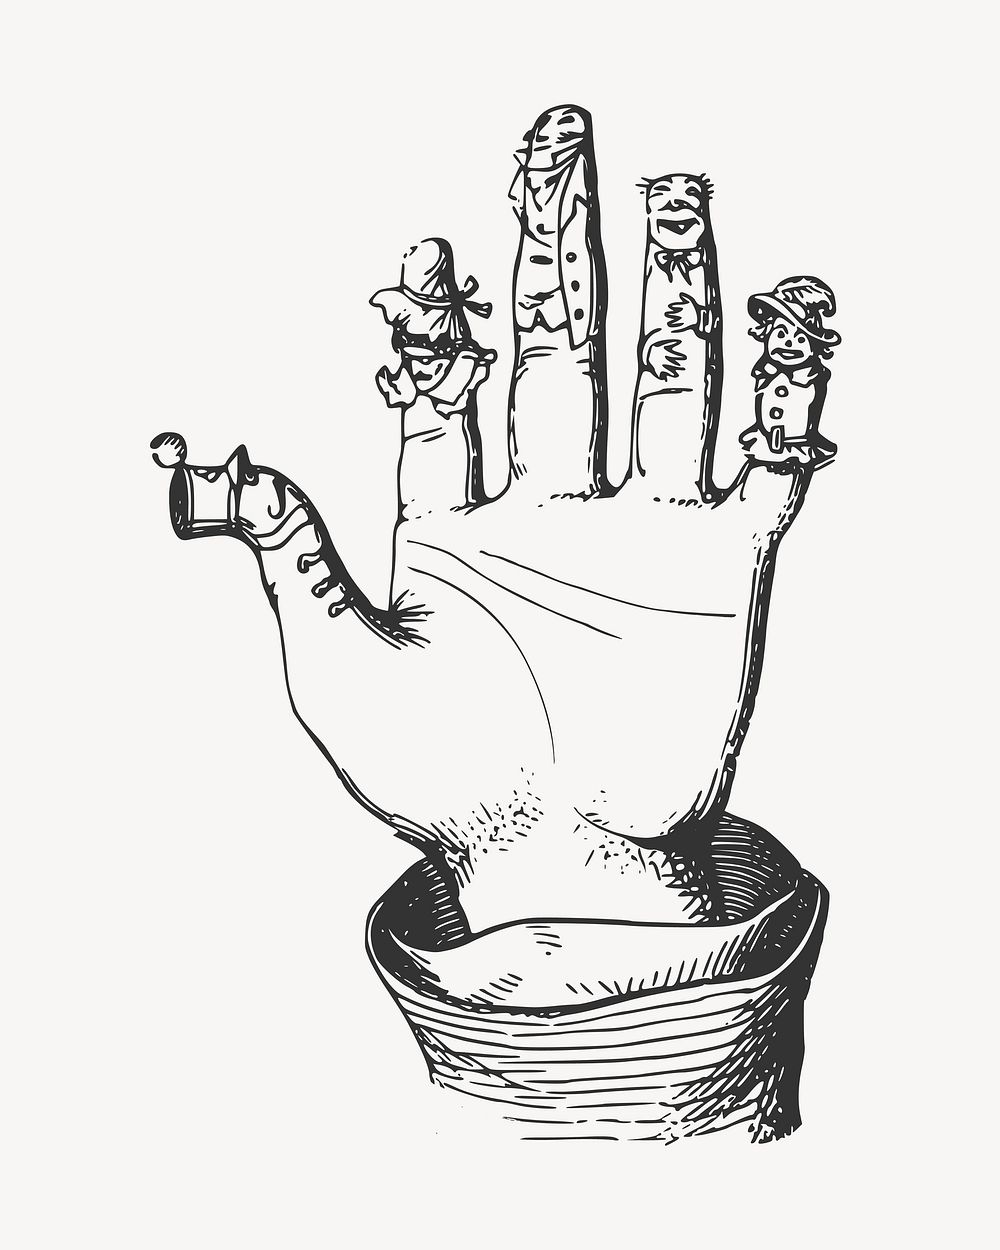 Finger puppet clip art vector. Free public domain CC0 image.